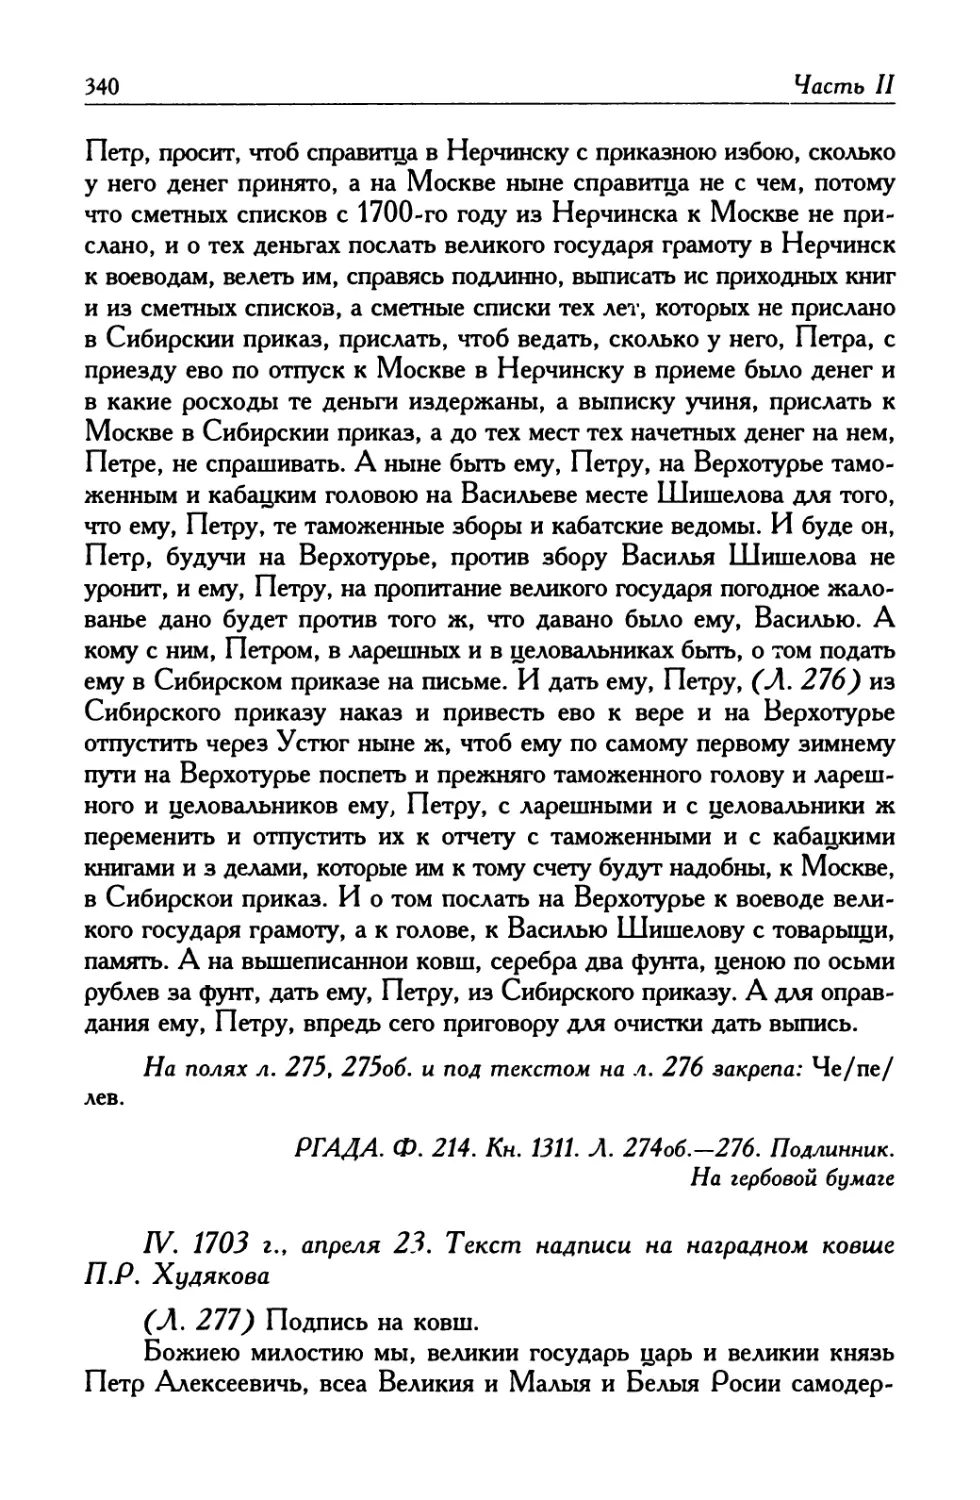 IV. 1703 г., апреля 23. Текст надписи на наградном ковше П. Р. Худякова